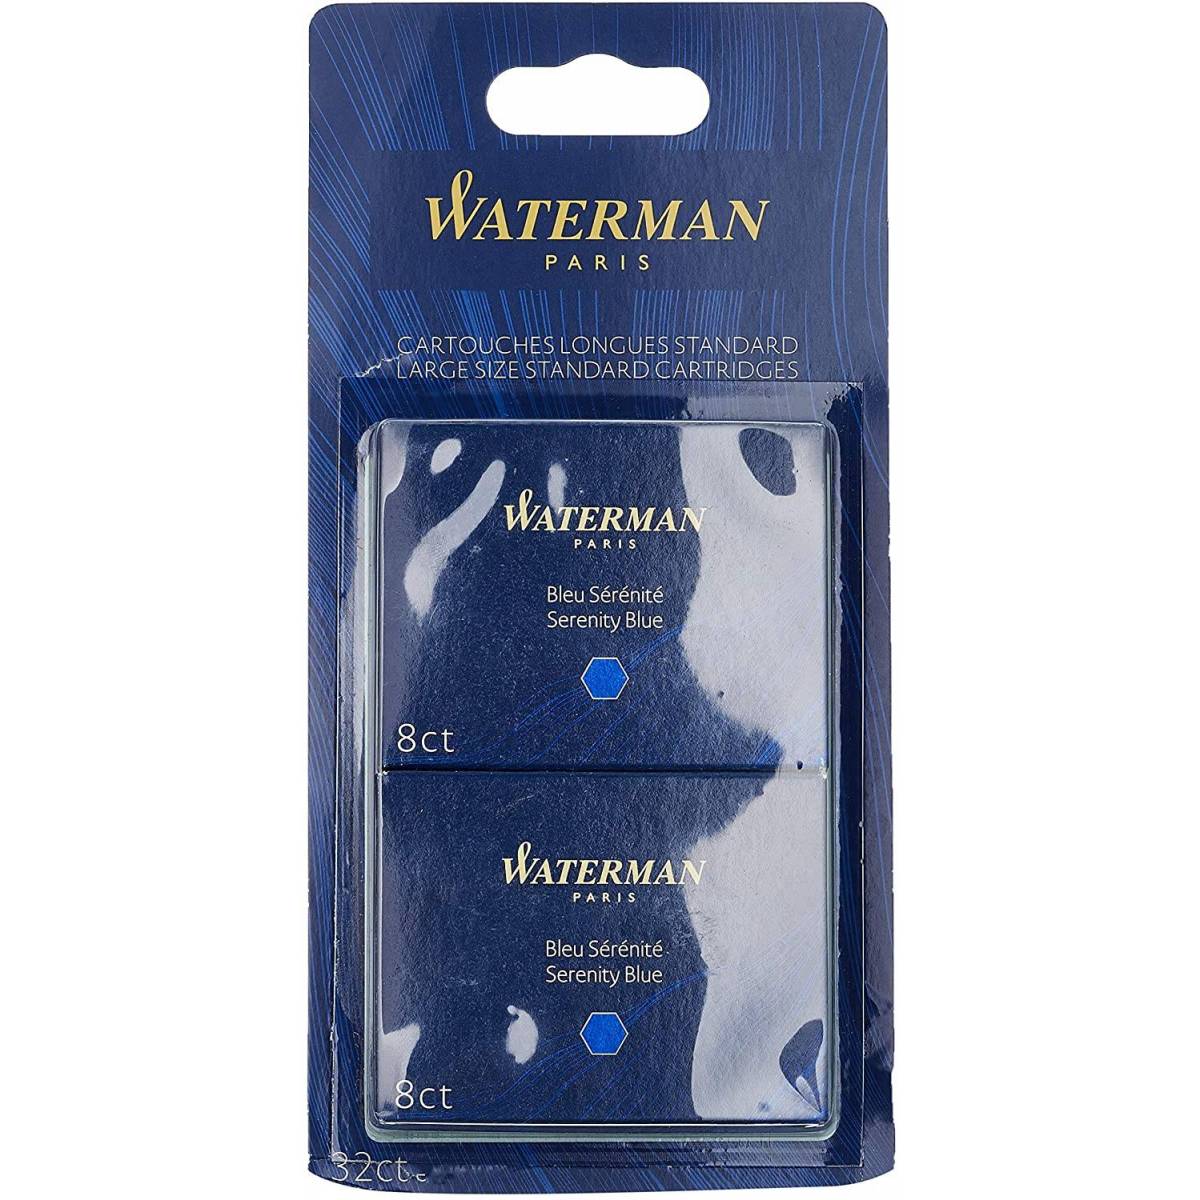 Waterman Etui de 8 cartouches standard encre bleue - prix pas cher